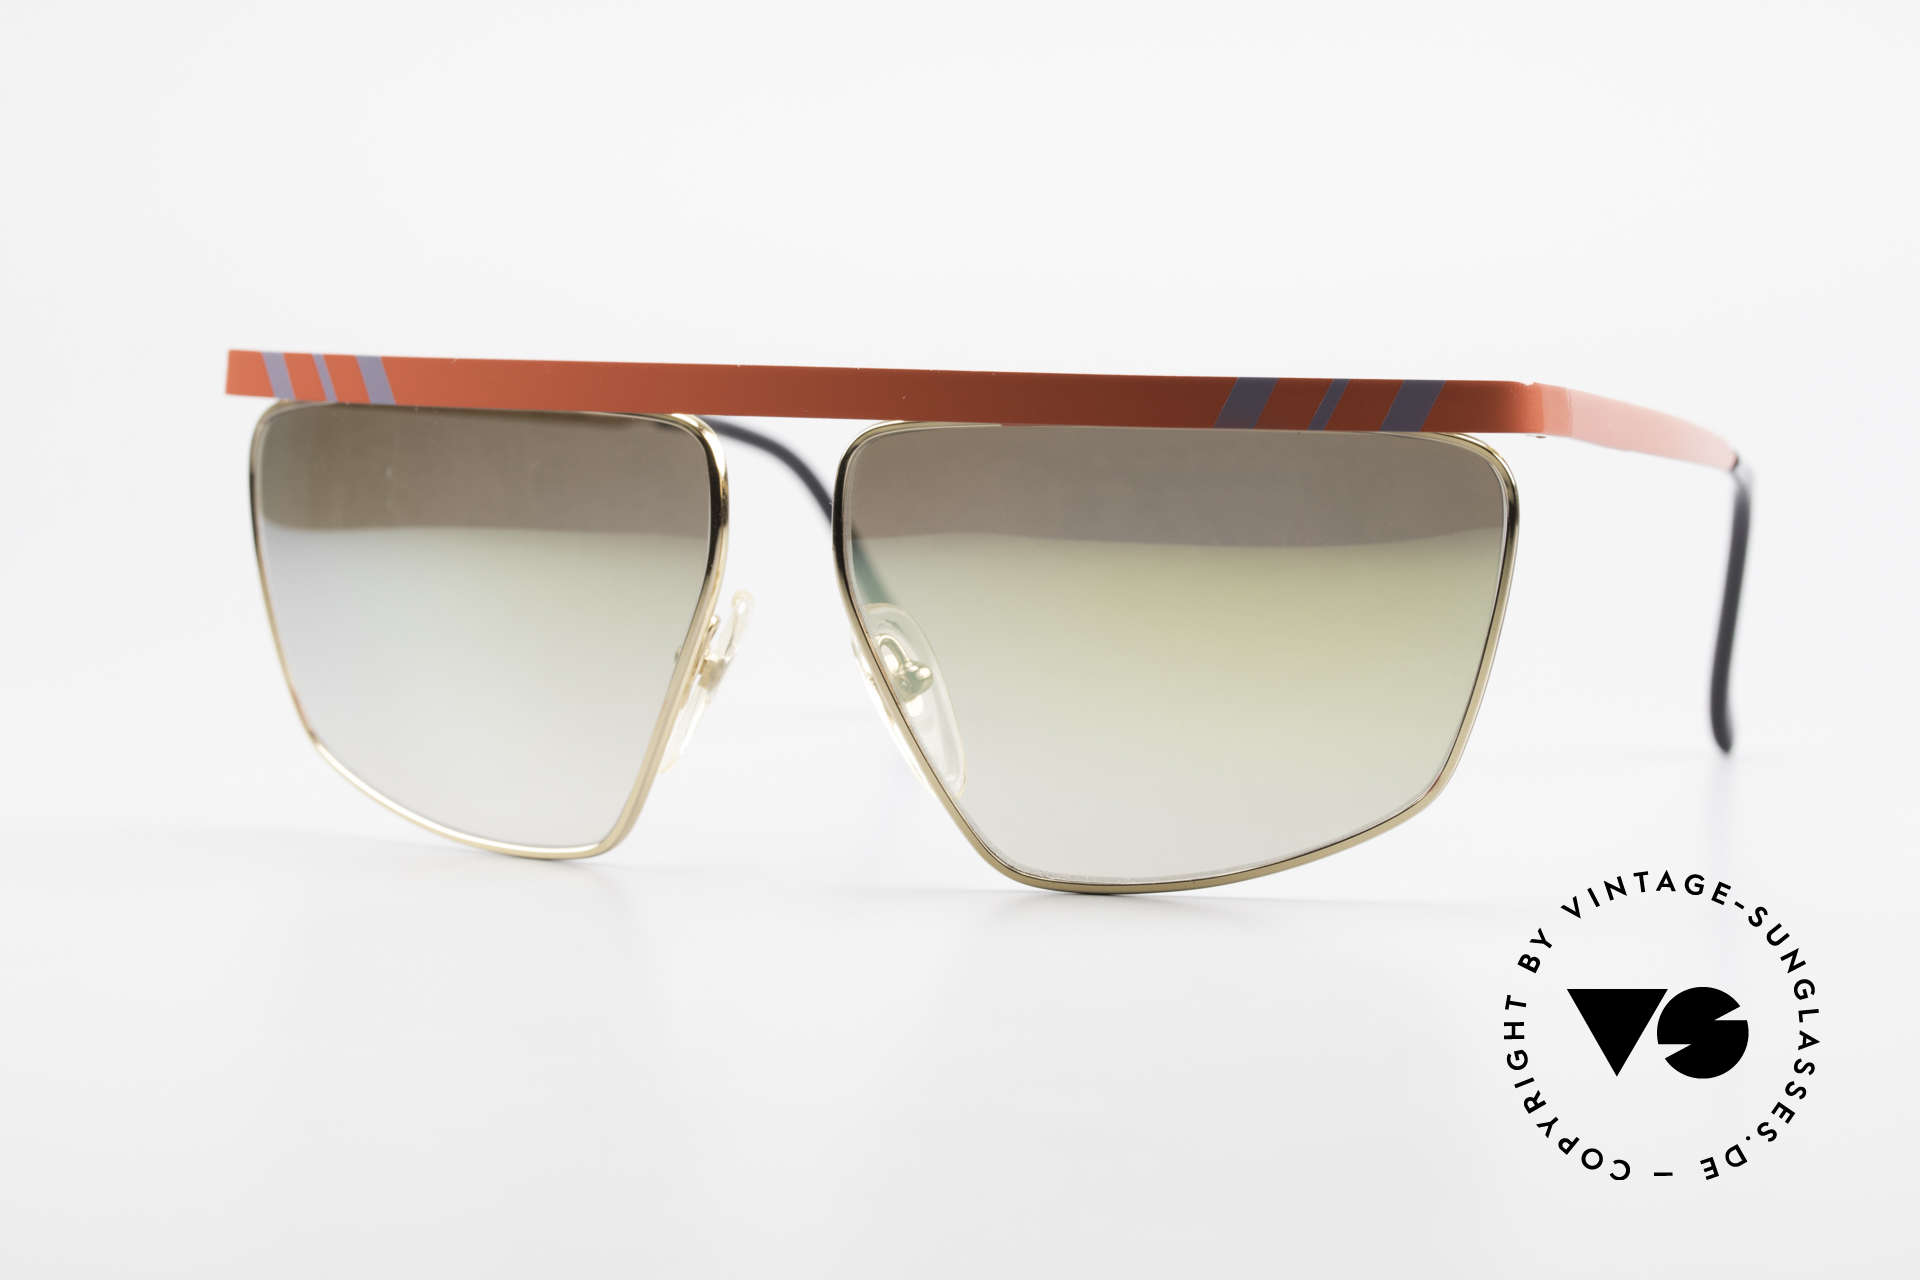 Casanova CN7 Luxus Sonnenbrille Verspiegelt, prunkvolles italienisches XL Design von Casanova, Passend für Herren und Damen